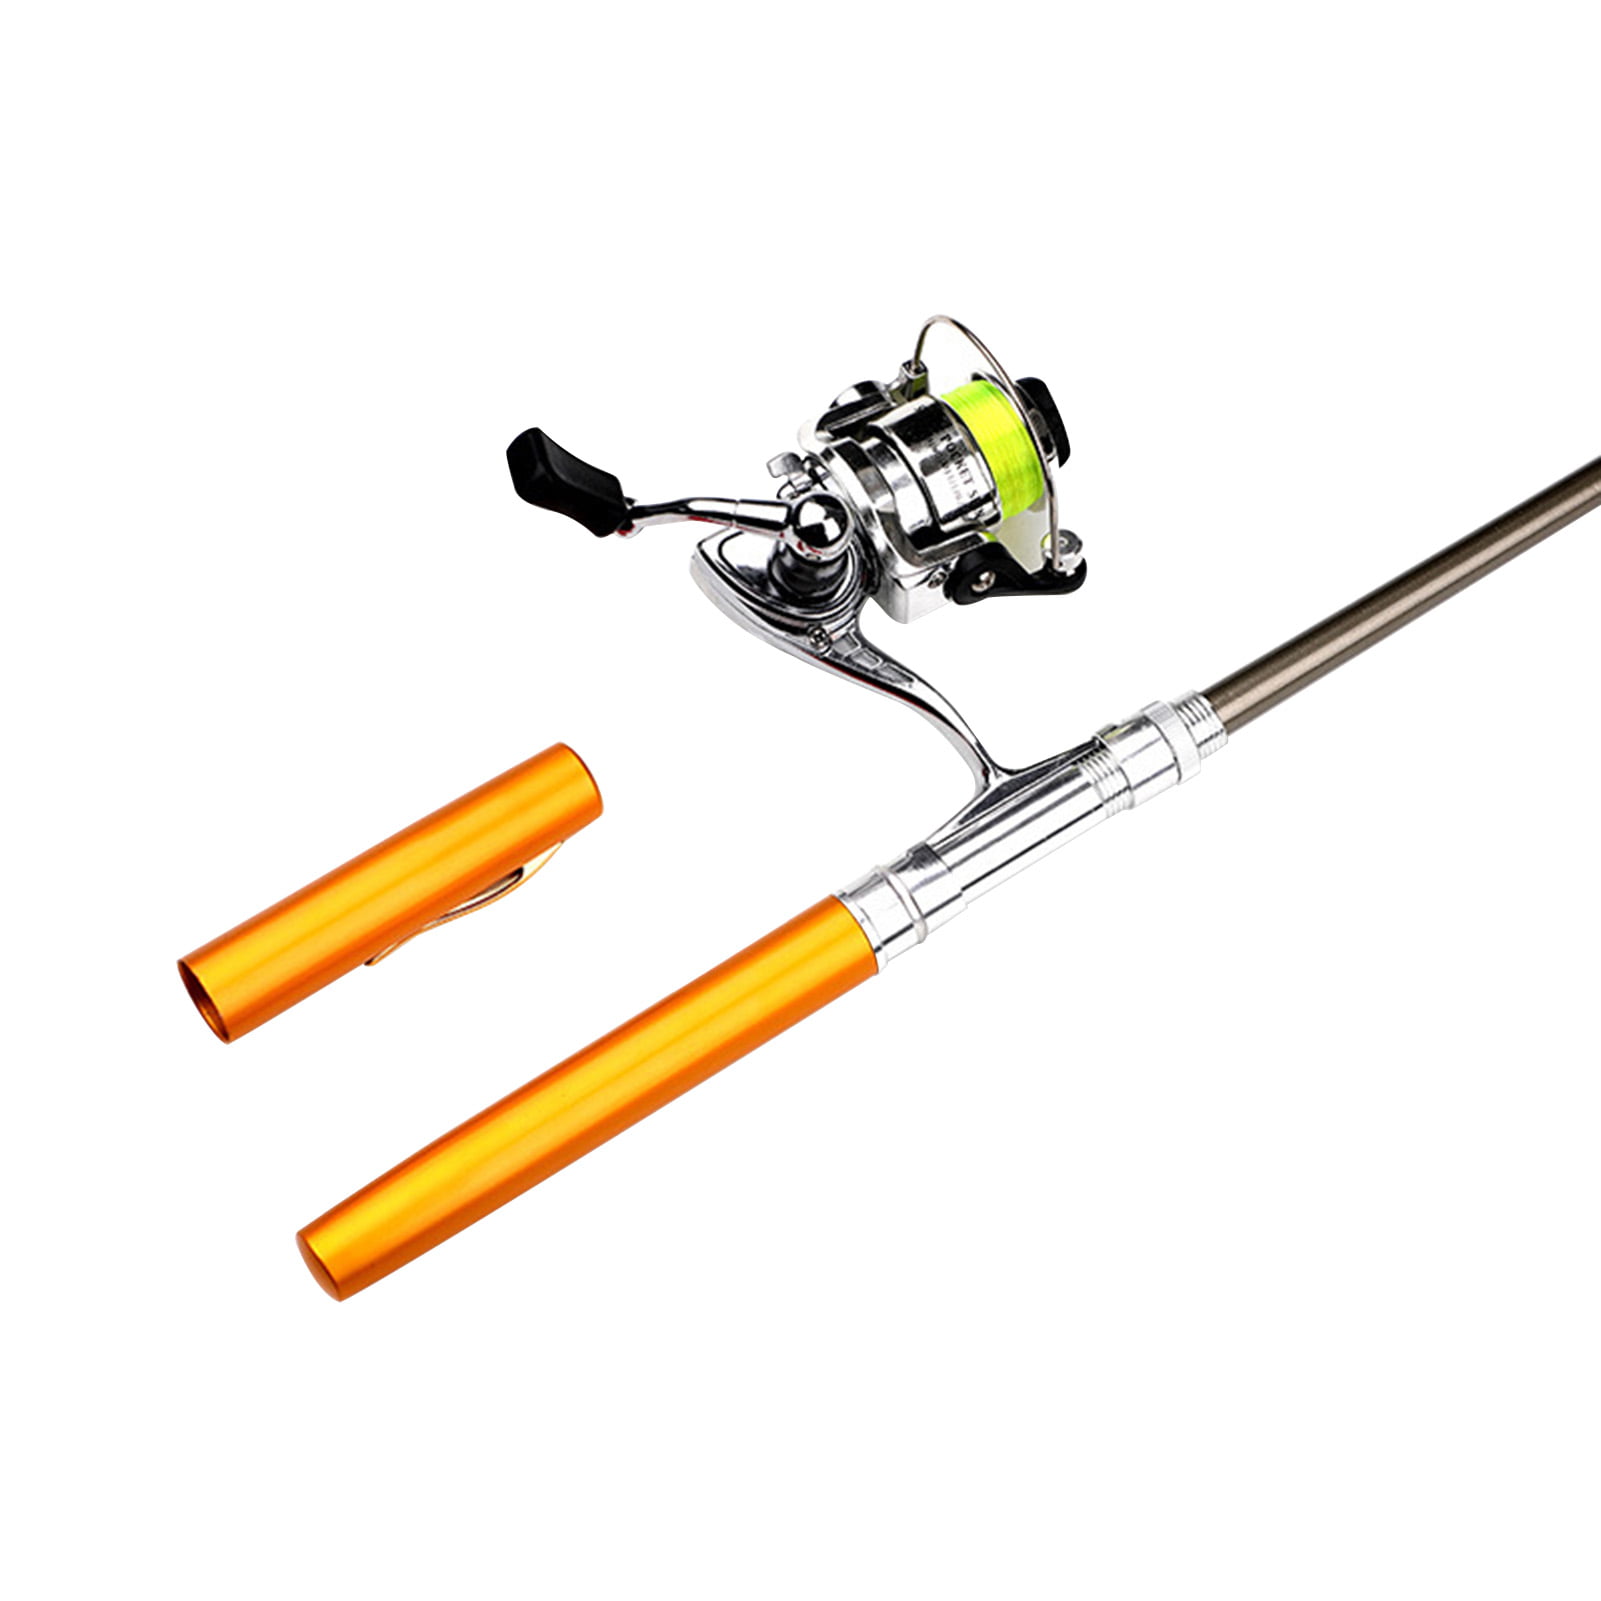  Pen Fishing Rod Kit, 39 Inch Mini Fishing Pole